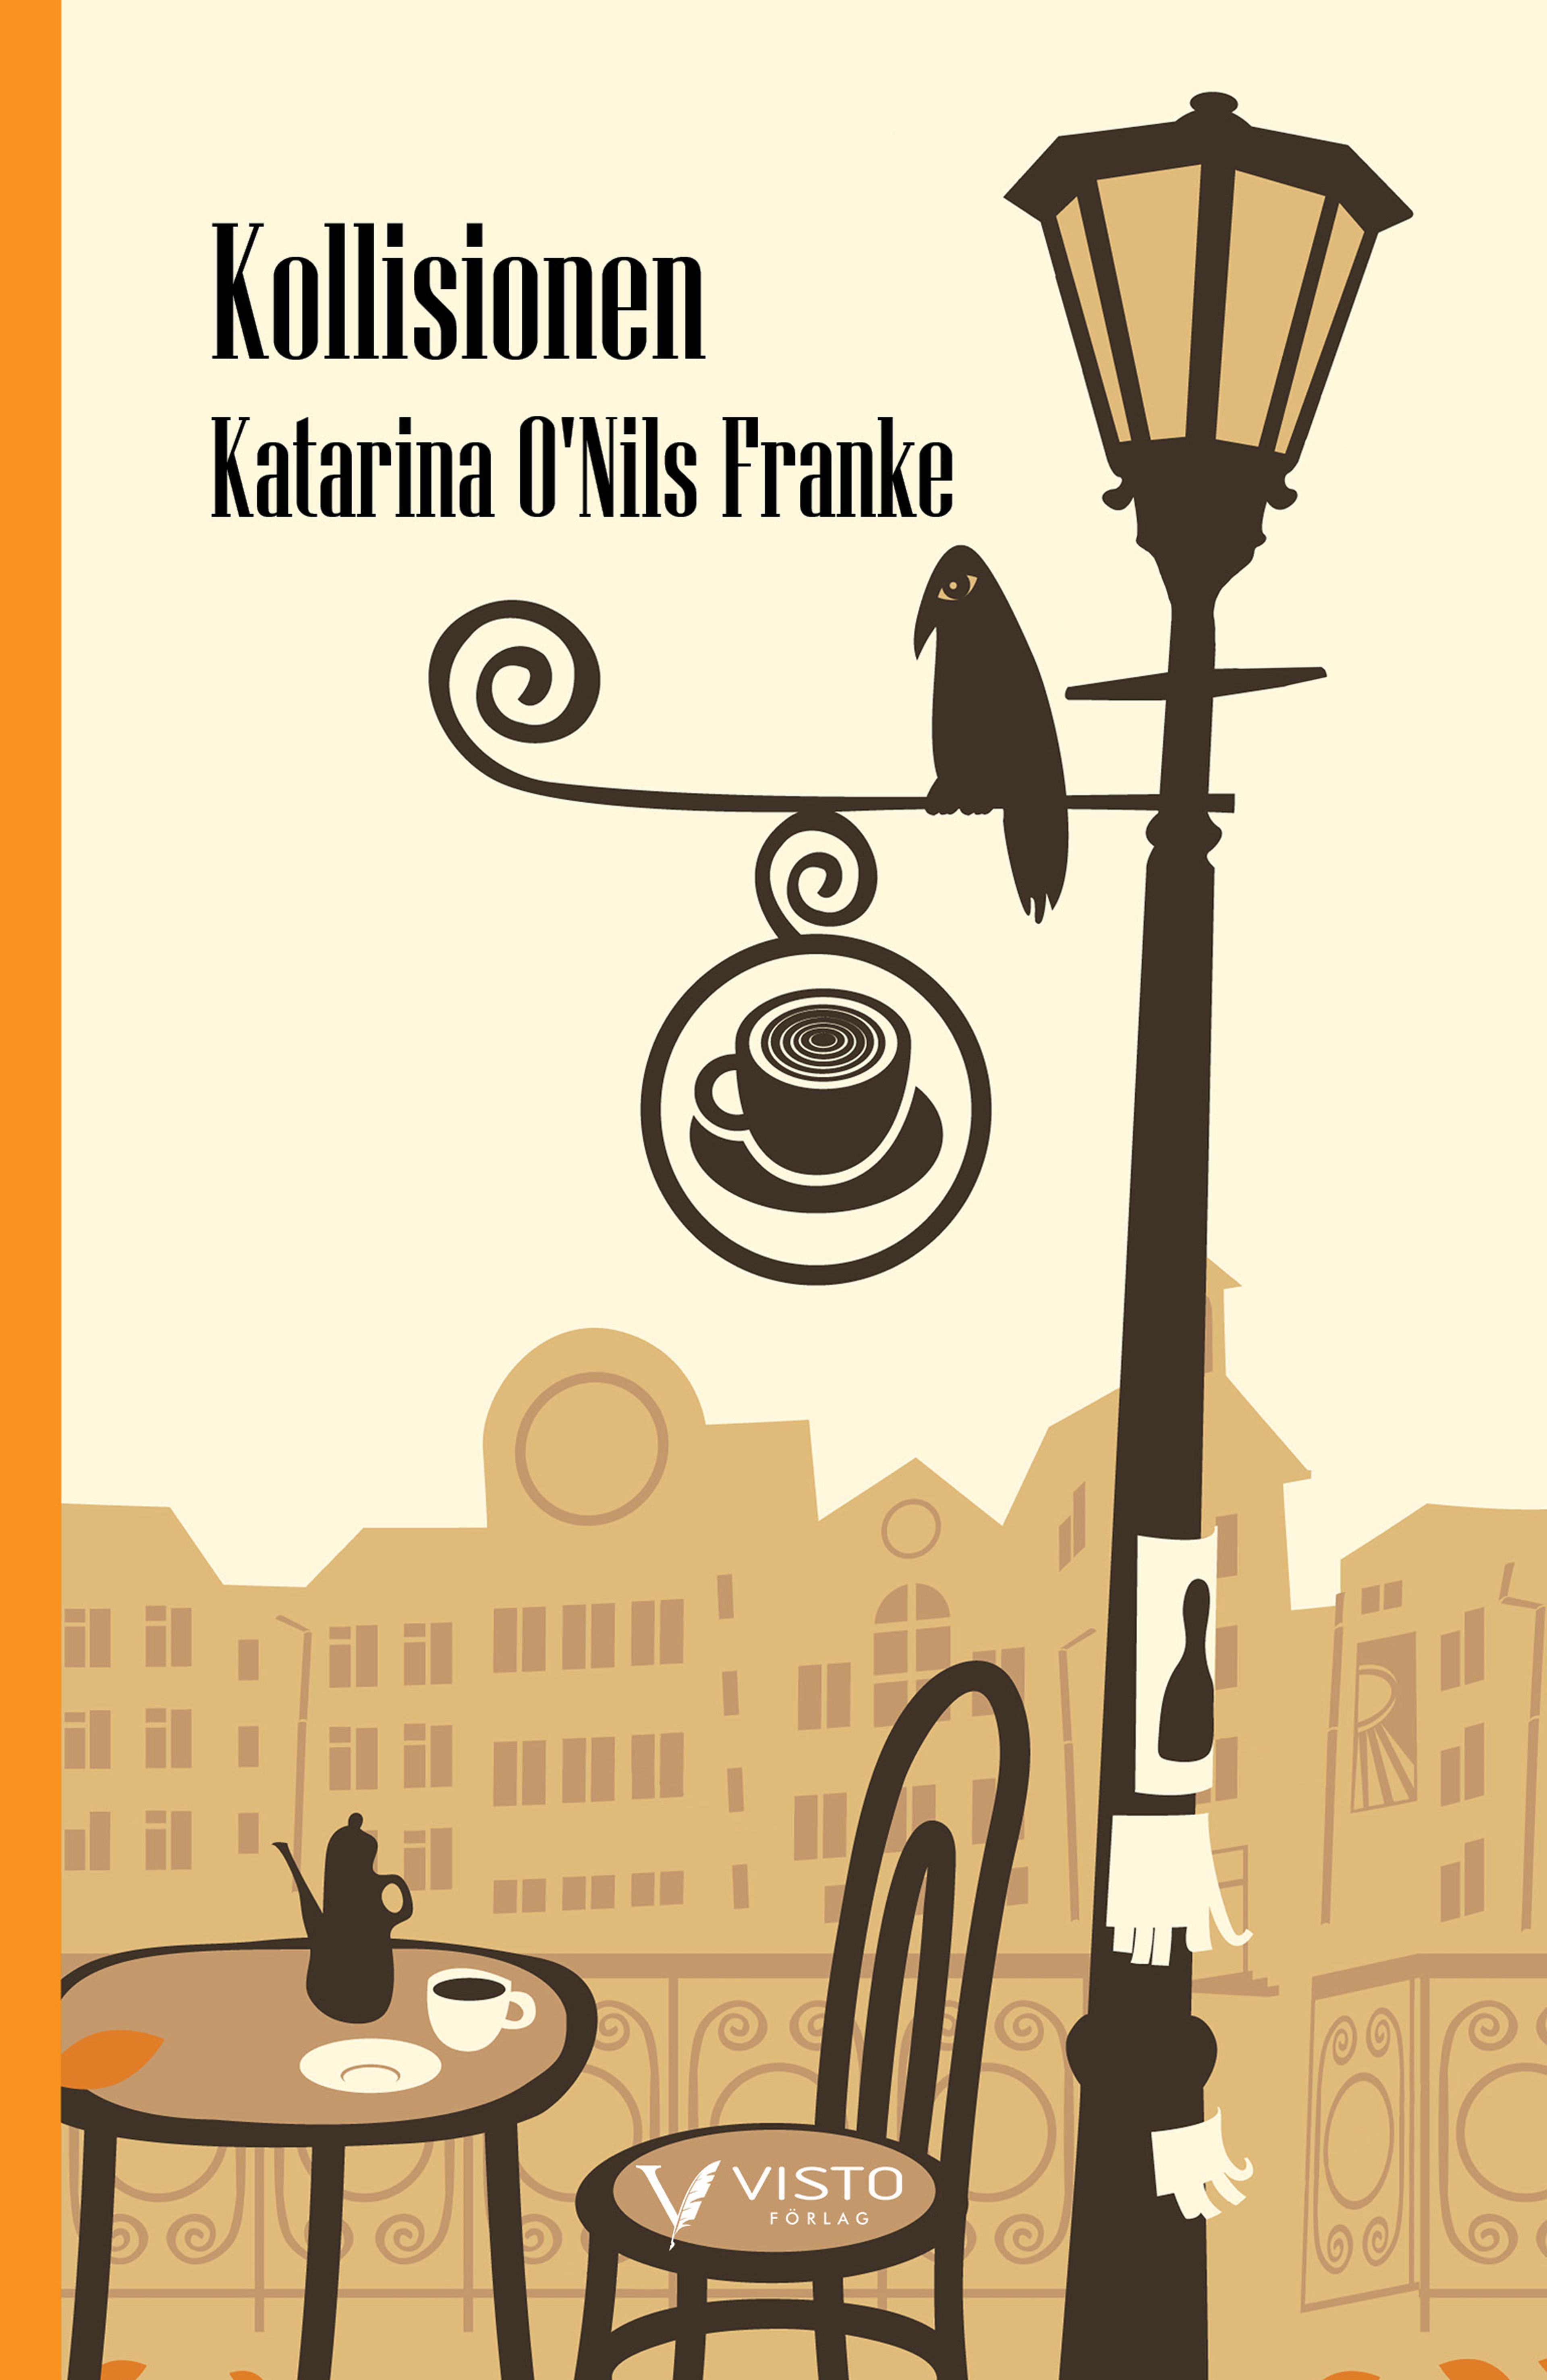 Kollisionen, e-bok av Katarina O'Nils Franke